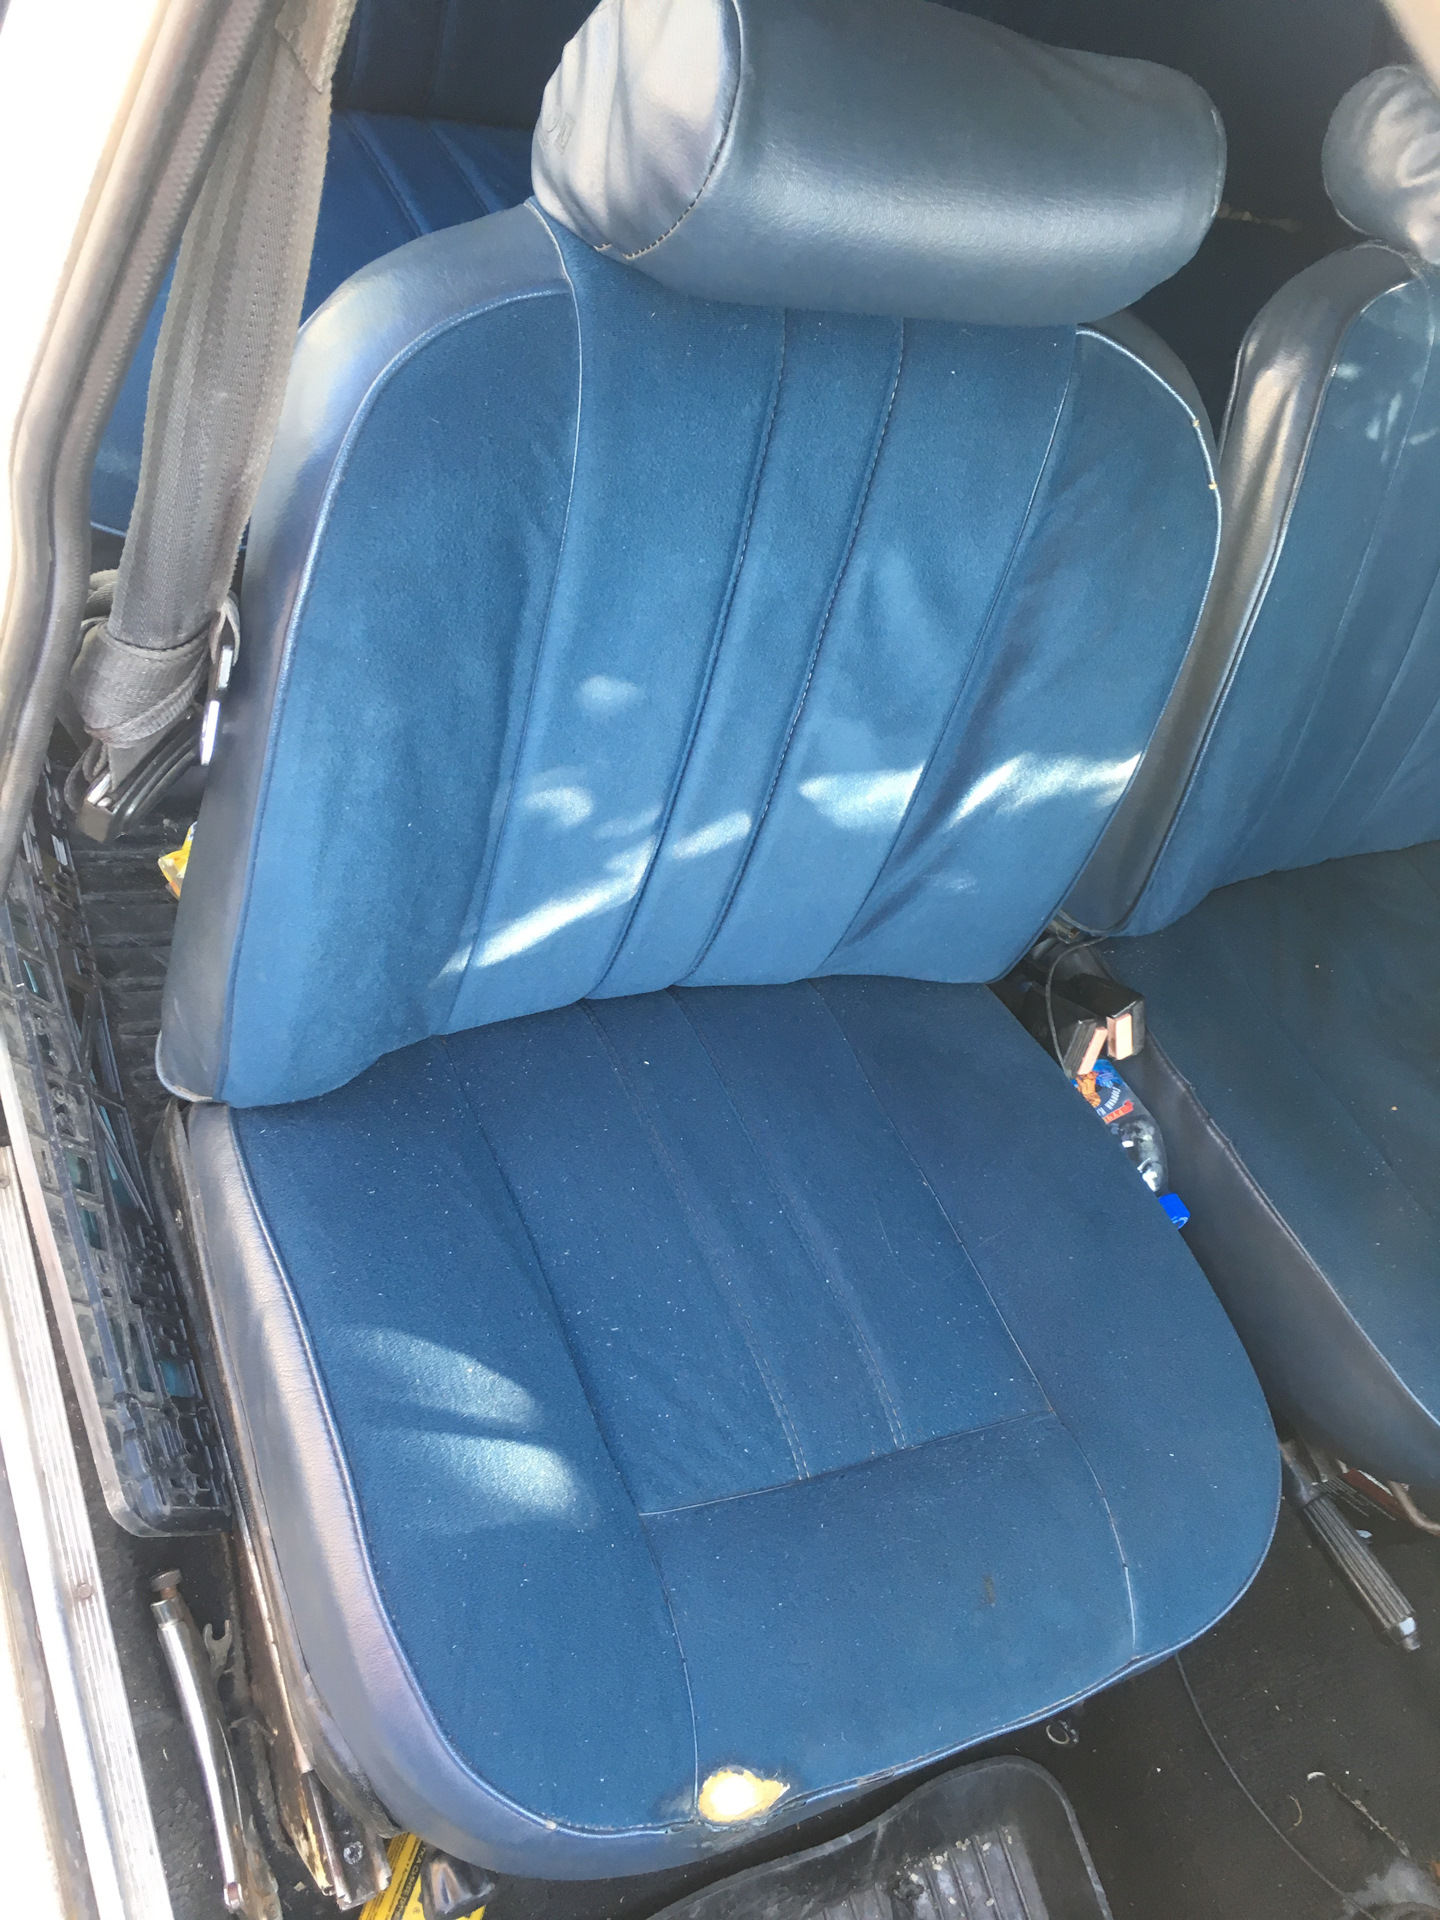 Сидения 2106 купить. Сиденья ВАЗ 2106. Пенолитье для сидений ВАЗ 2106. Синие сидения ВАЗ 2106. Сиденья ВАЗ 2107 синие.